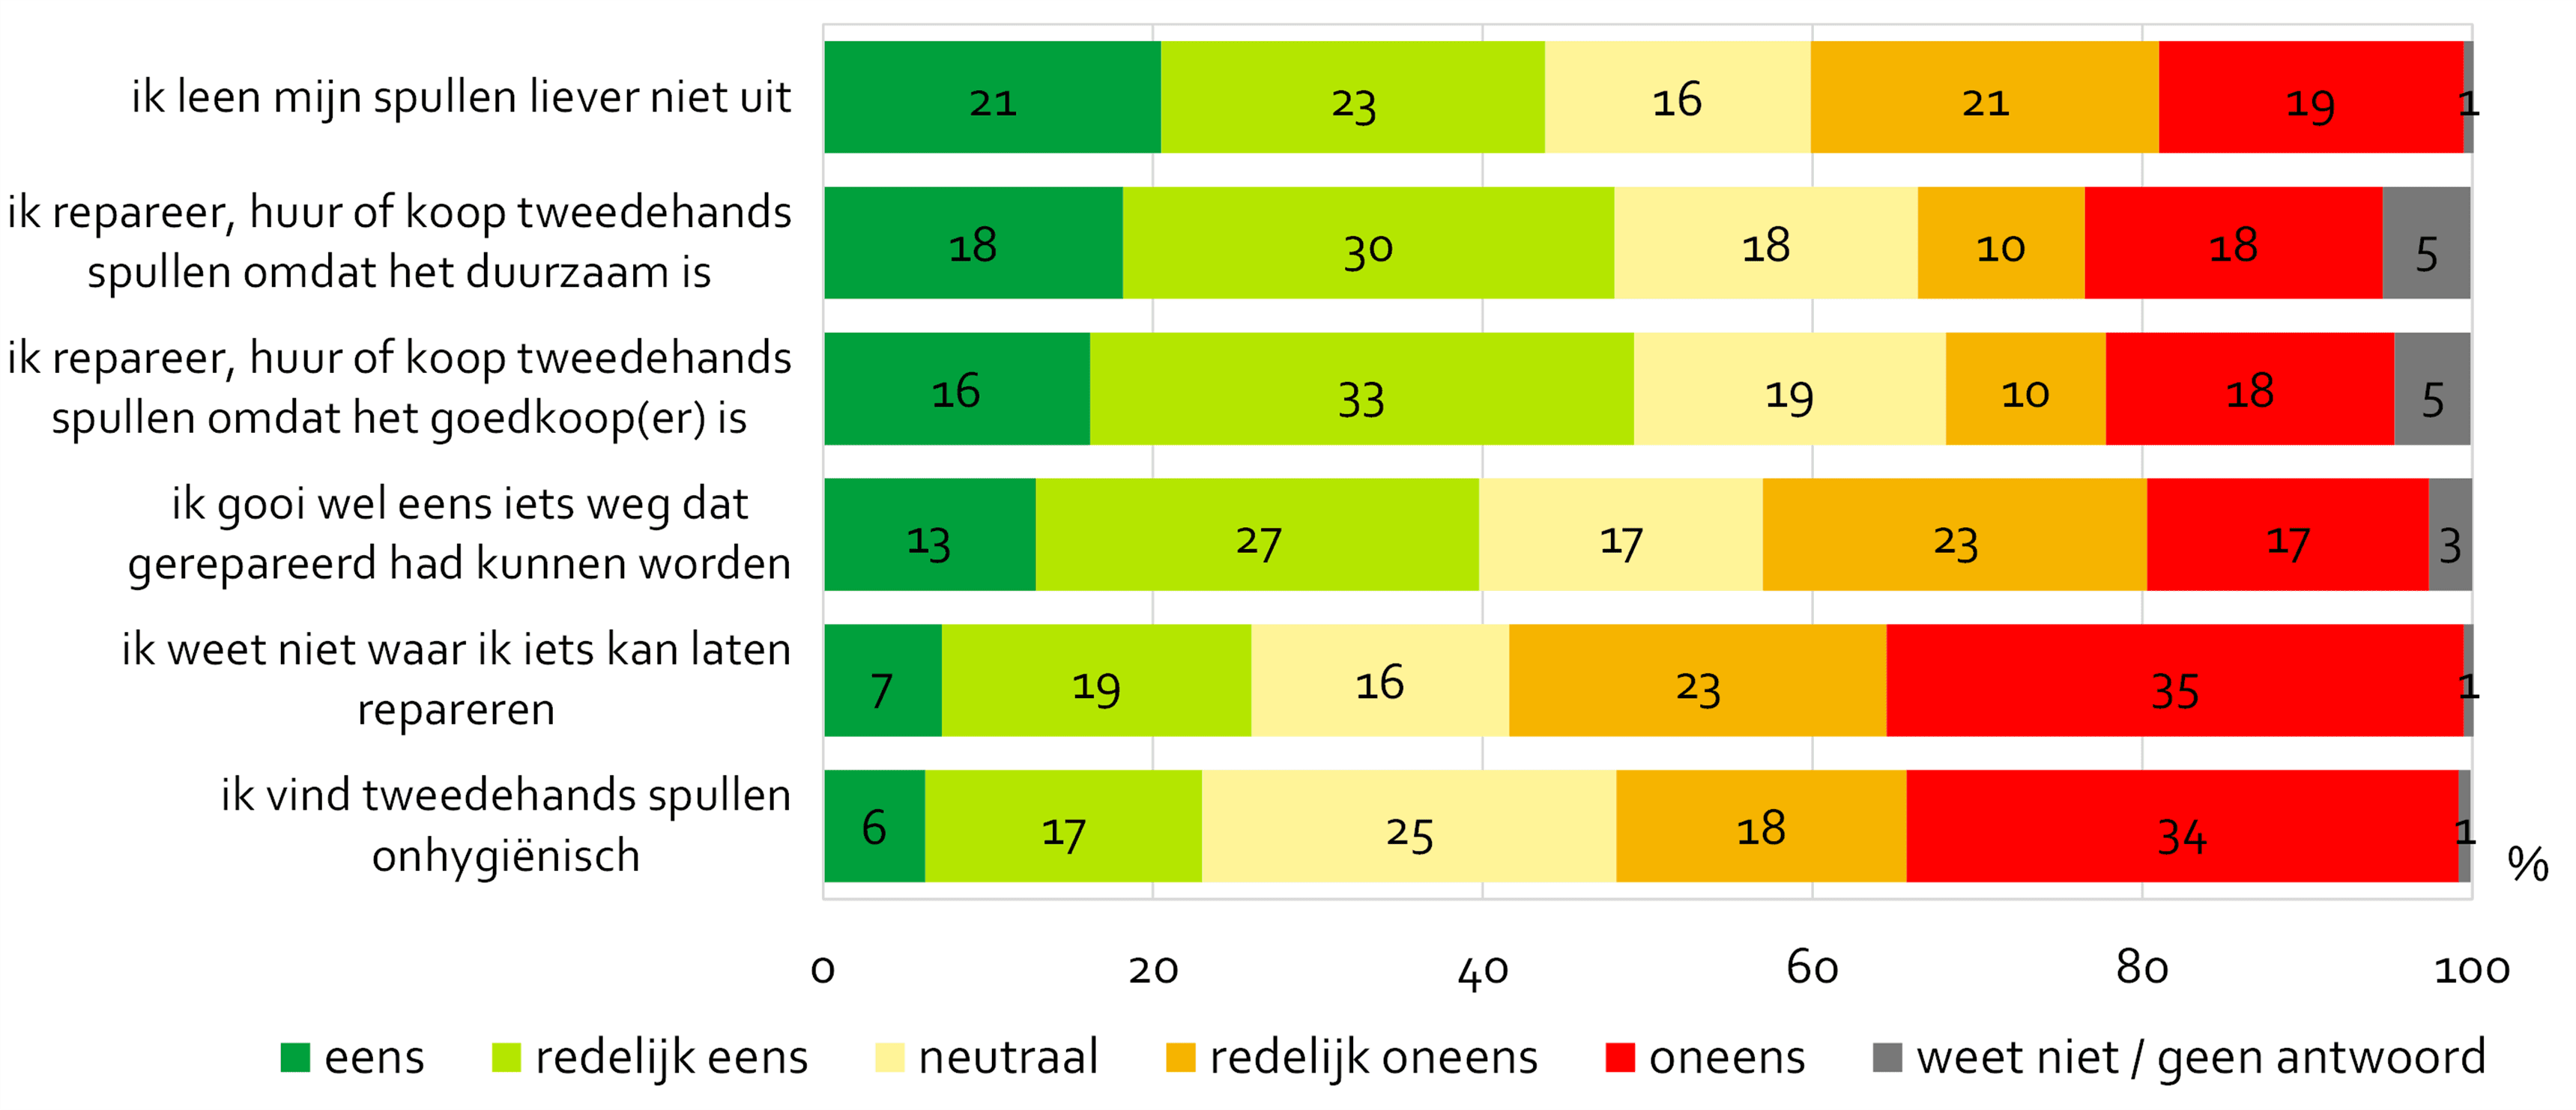 Mening van Amsterdammers over het gebruik van tweedehands, huur/leen en reparatiemogelijkheden. 48% geeft aan te repareren/huren of tweedehands te kopen vanwege duurzaamheid. 40% geeft aan weleens iets weg te gooien wat gerepareerd had kunnen worden.